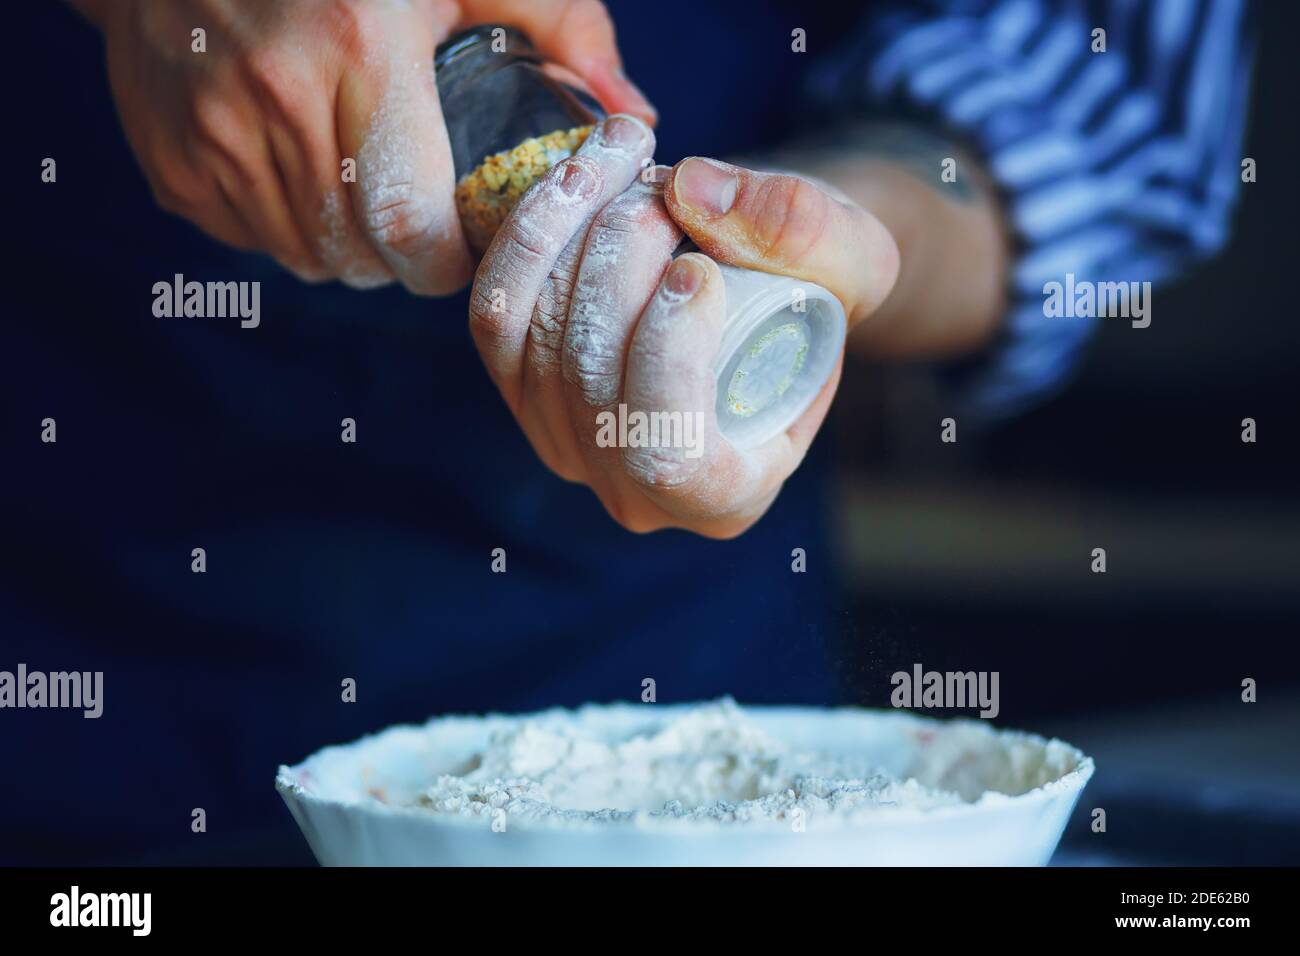 Ein Koch in einer blauen Schürze und gestreiftem Hemd hält einen gläsernen Salzstreuer mit Gewürzen und gießt ihn in eine Schüssel Mehl für zukünftiges Backen. Hausmannskost. Stockfoto